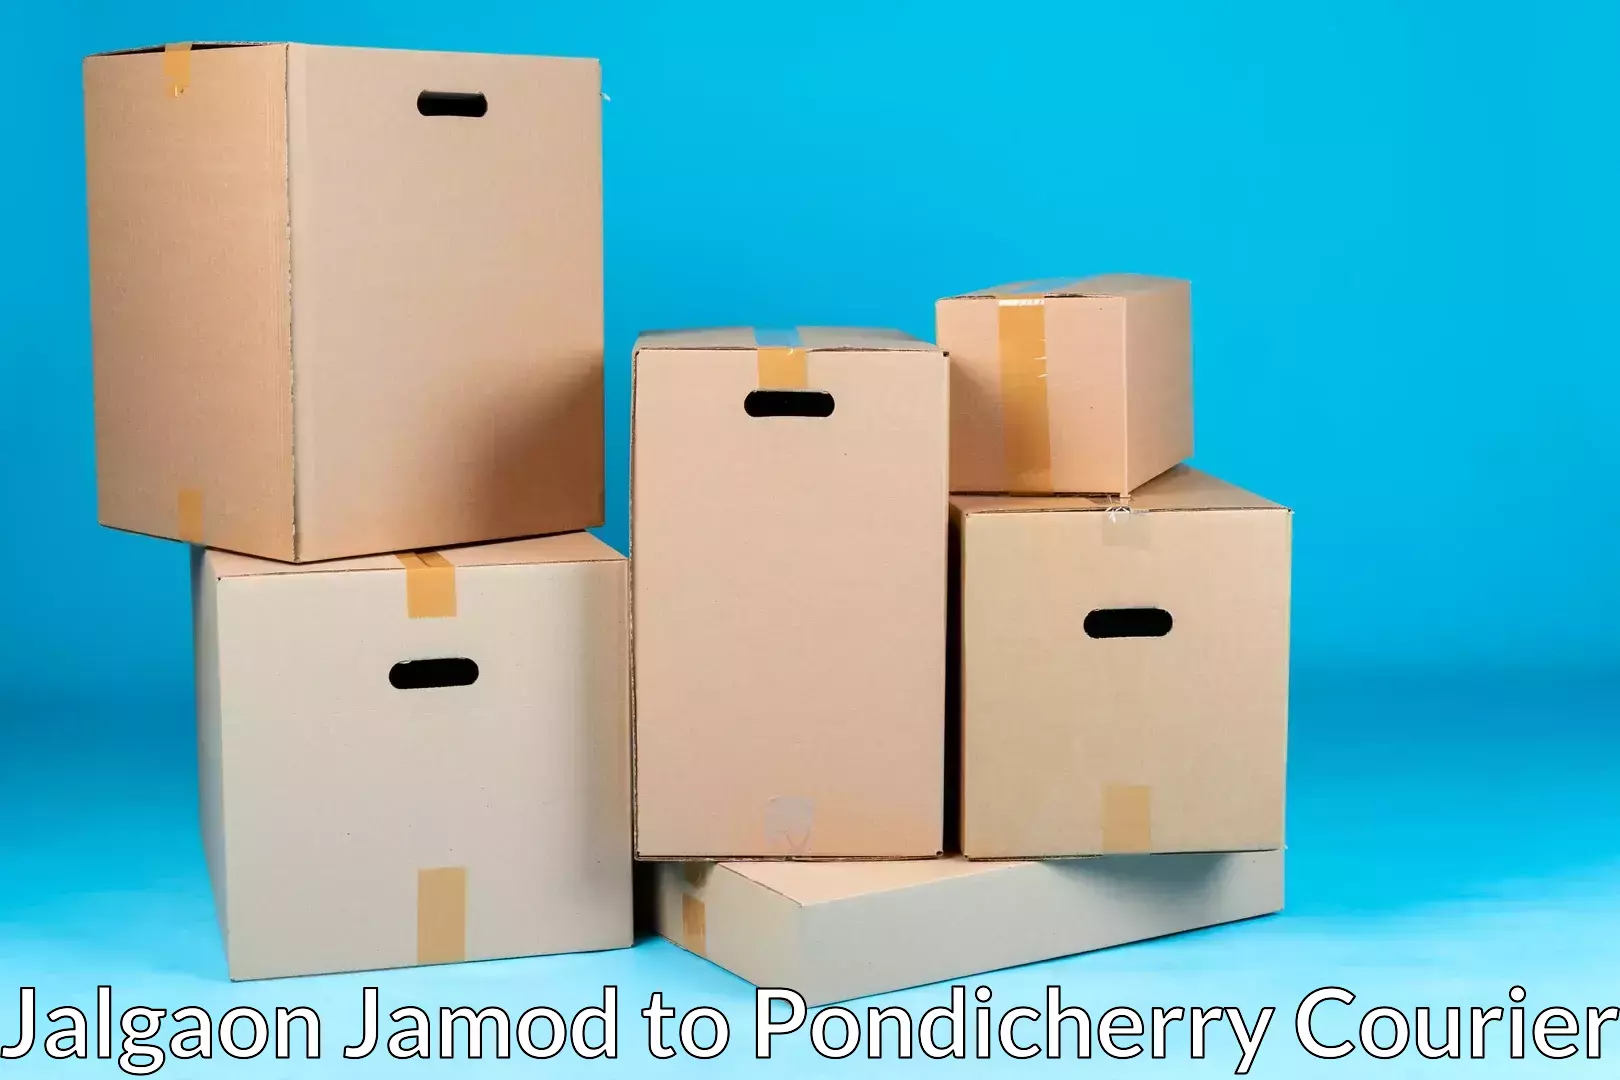 Furniture moving services Jalgaon Jamod to Pondicherry University